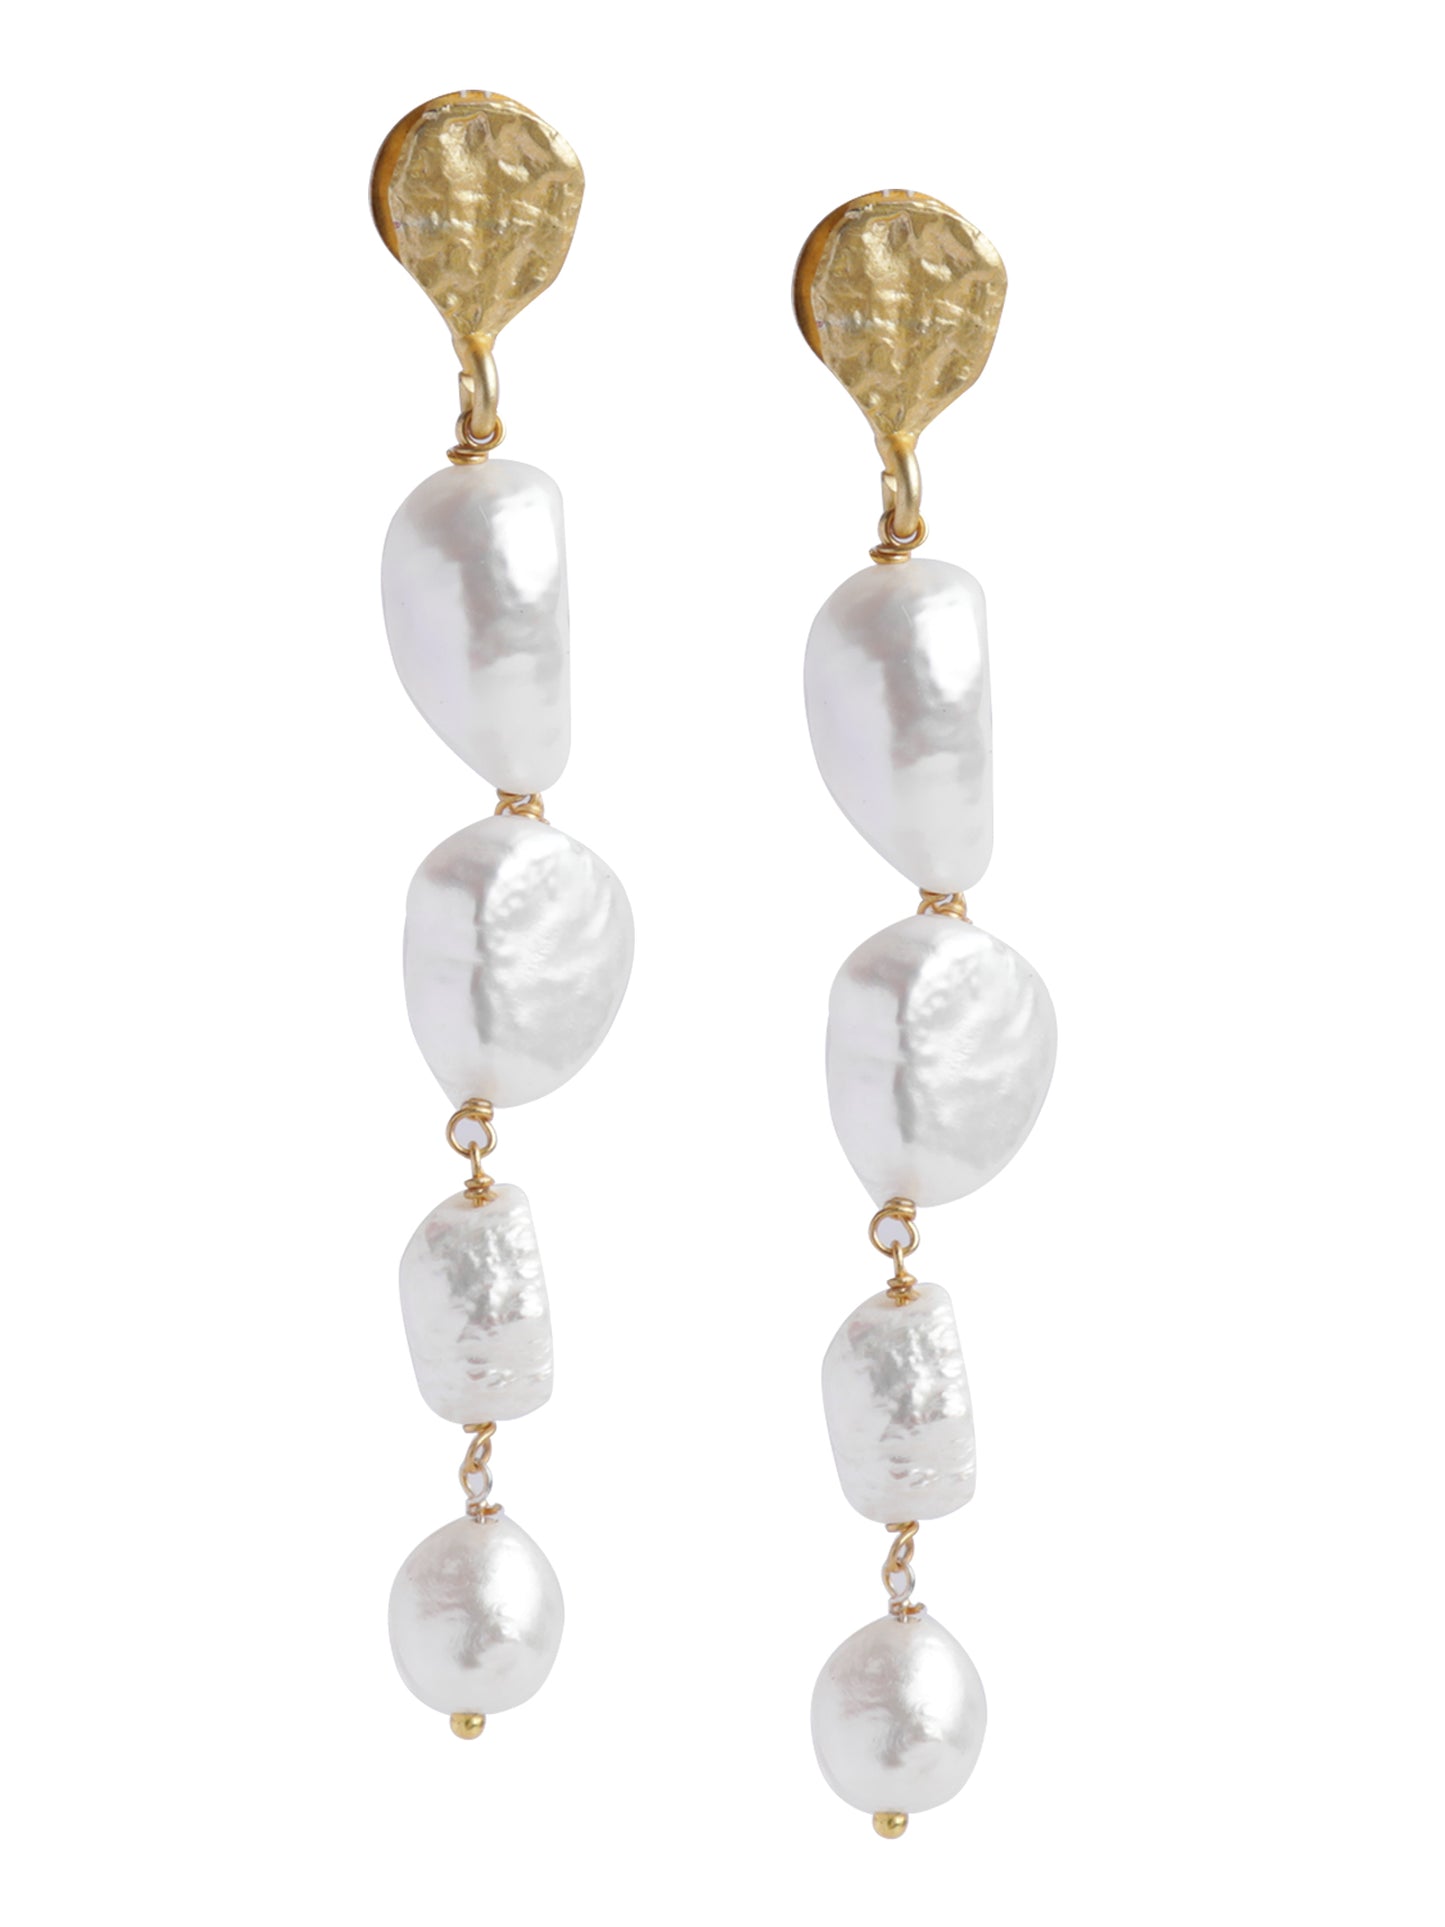 The Golden-White Malti Earrings